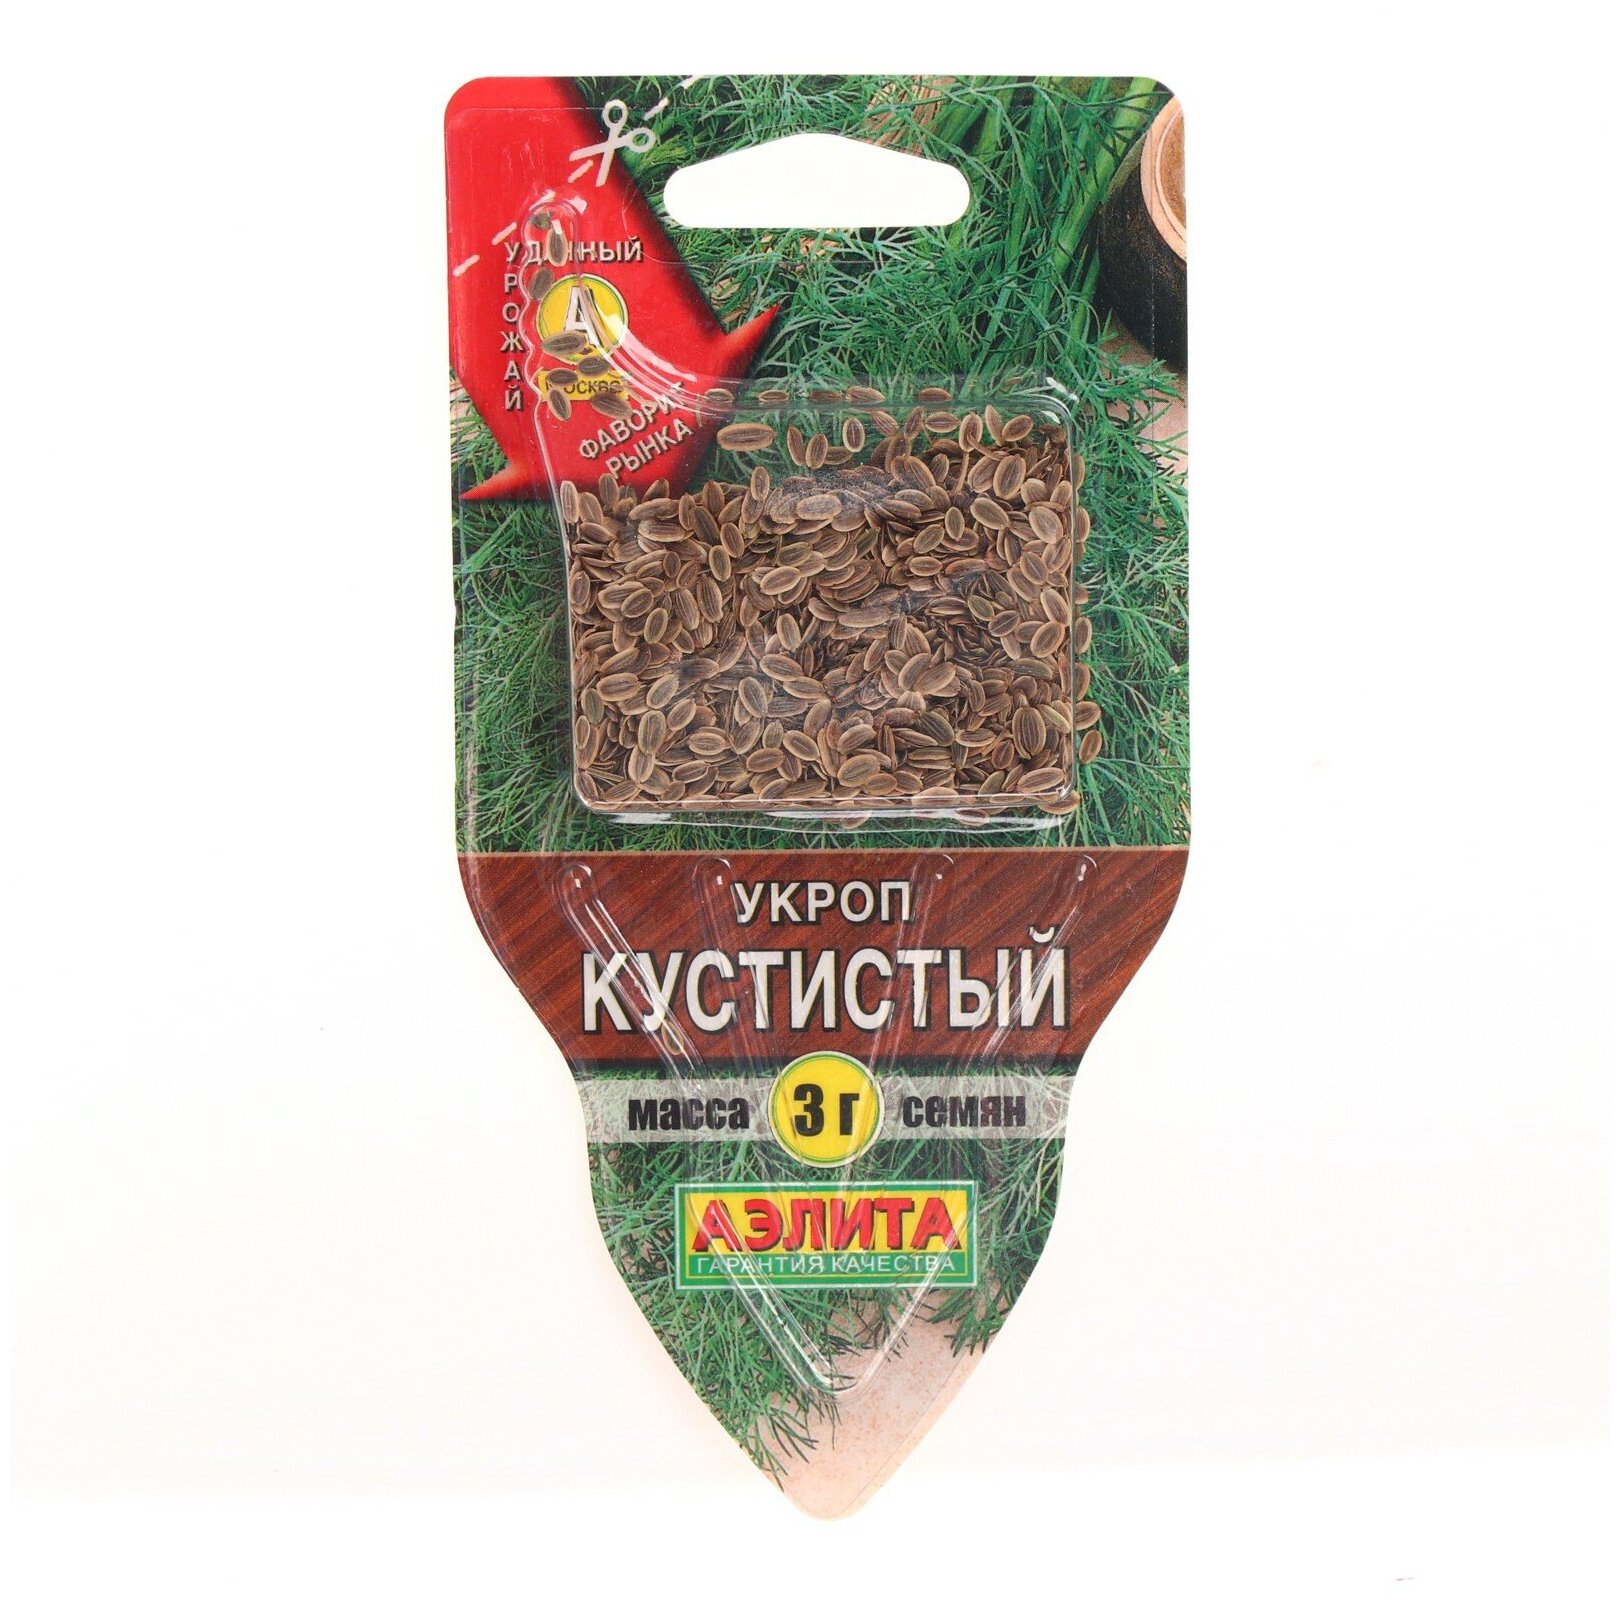 Семена Укроп "Кустистый", сеялка, 3 г